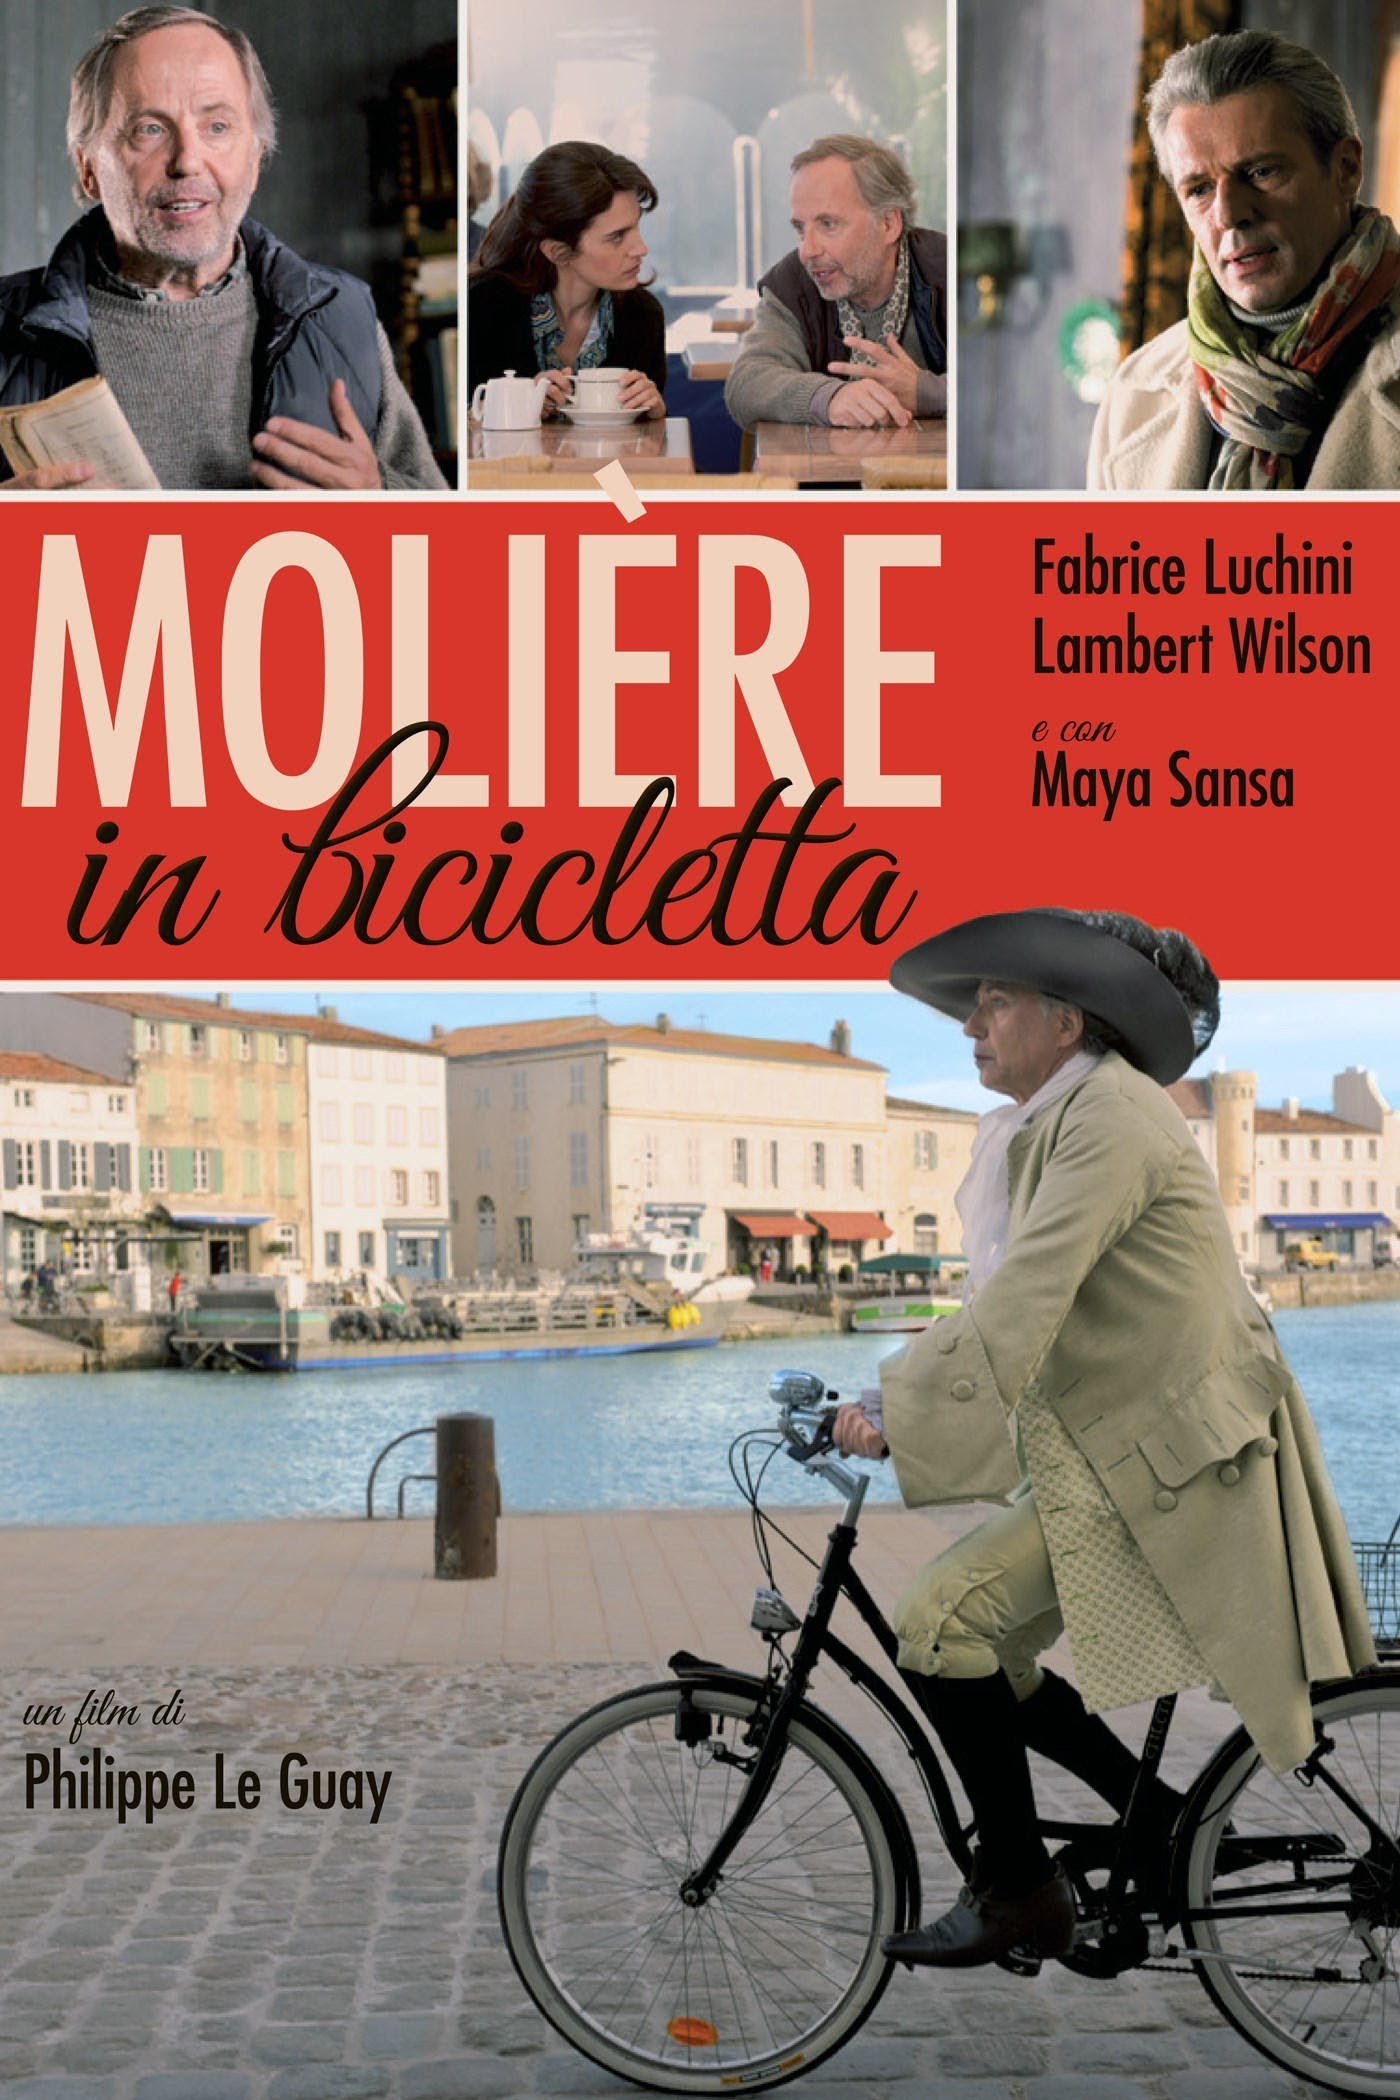 Moliere in bicicletta [HD] (2013)